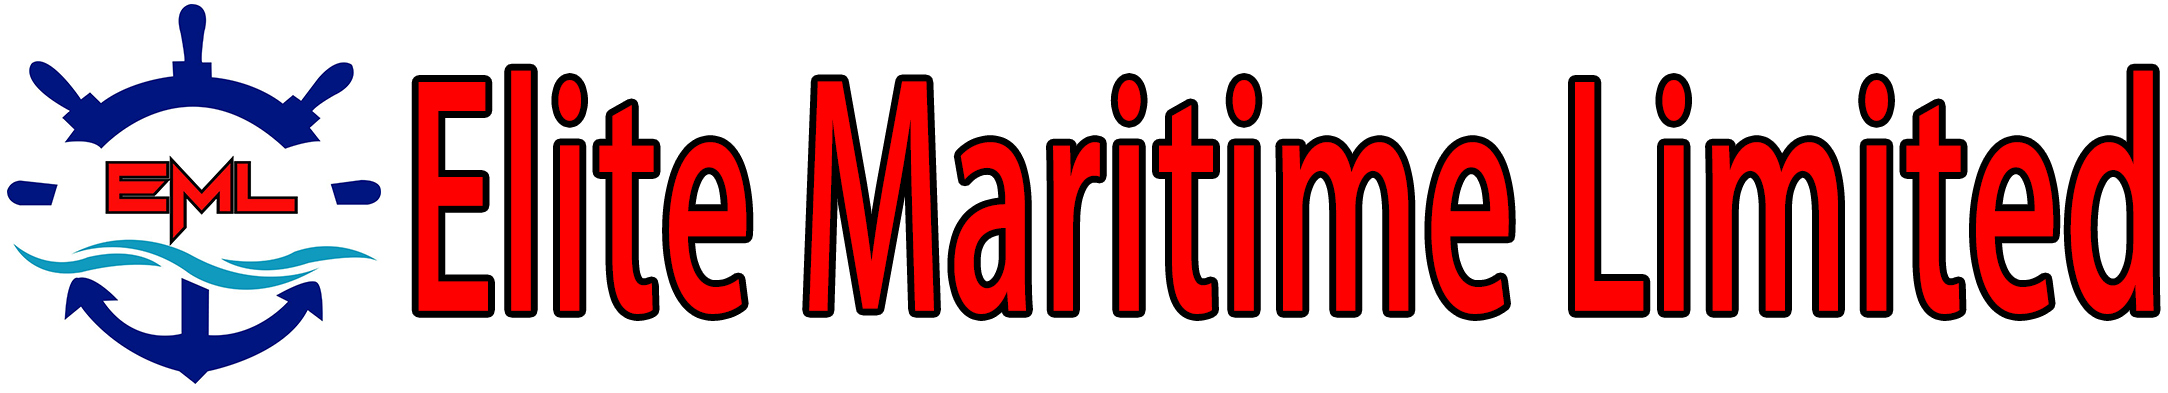 Elite-Maritime-Limited-Logo